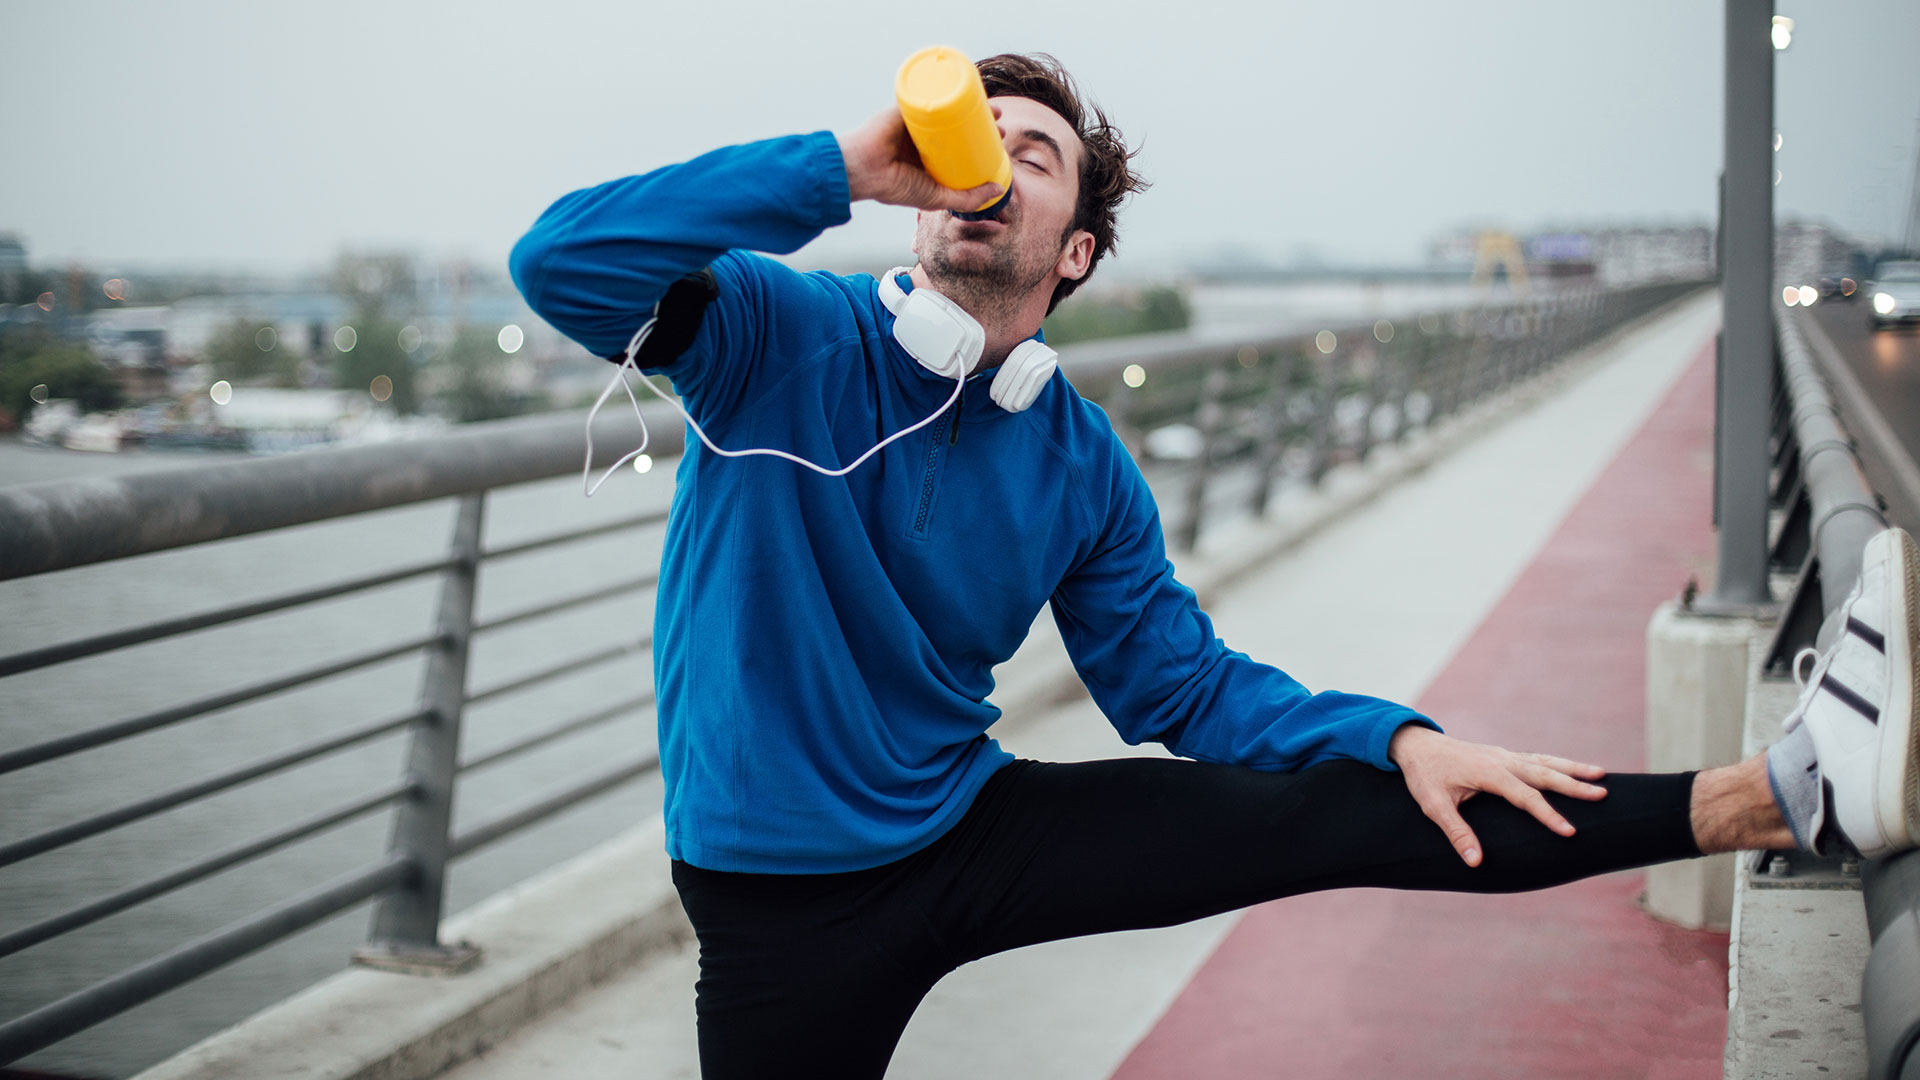 Estar activo, comer mejor, perder peso, no fumar, son solo algunas de las recomendaciones para estar saludable
(Getty Images)